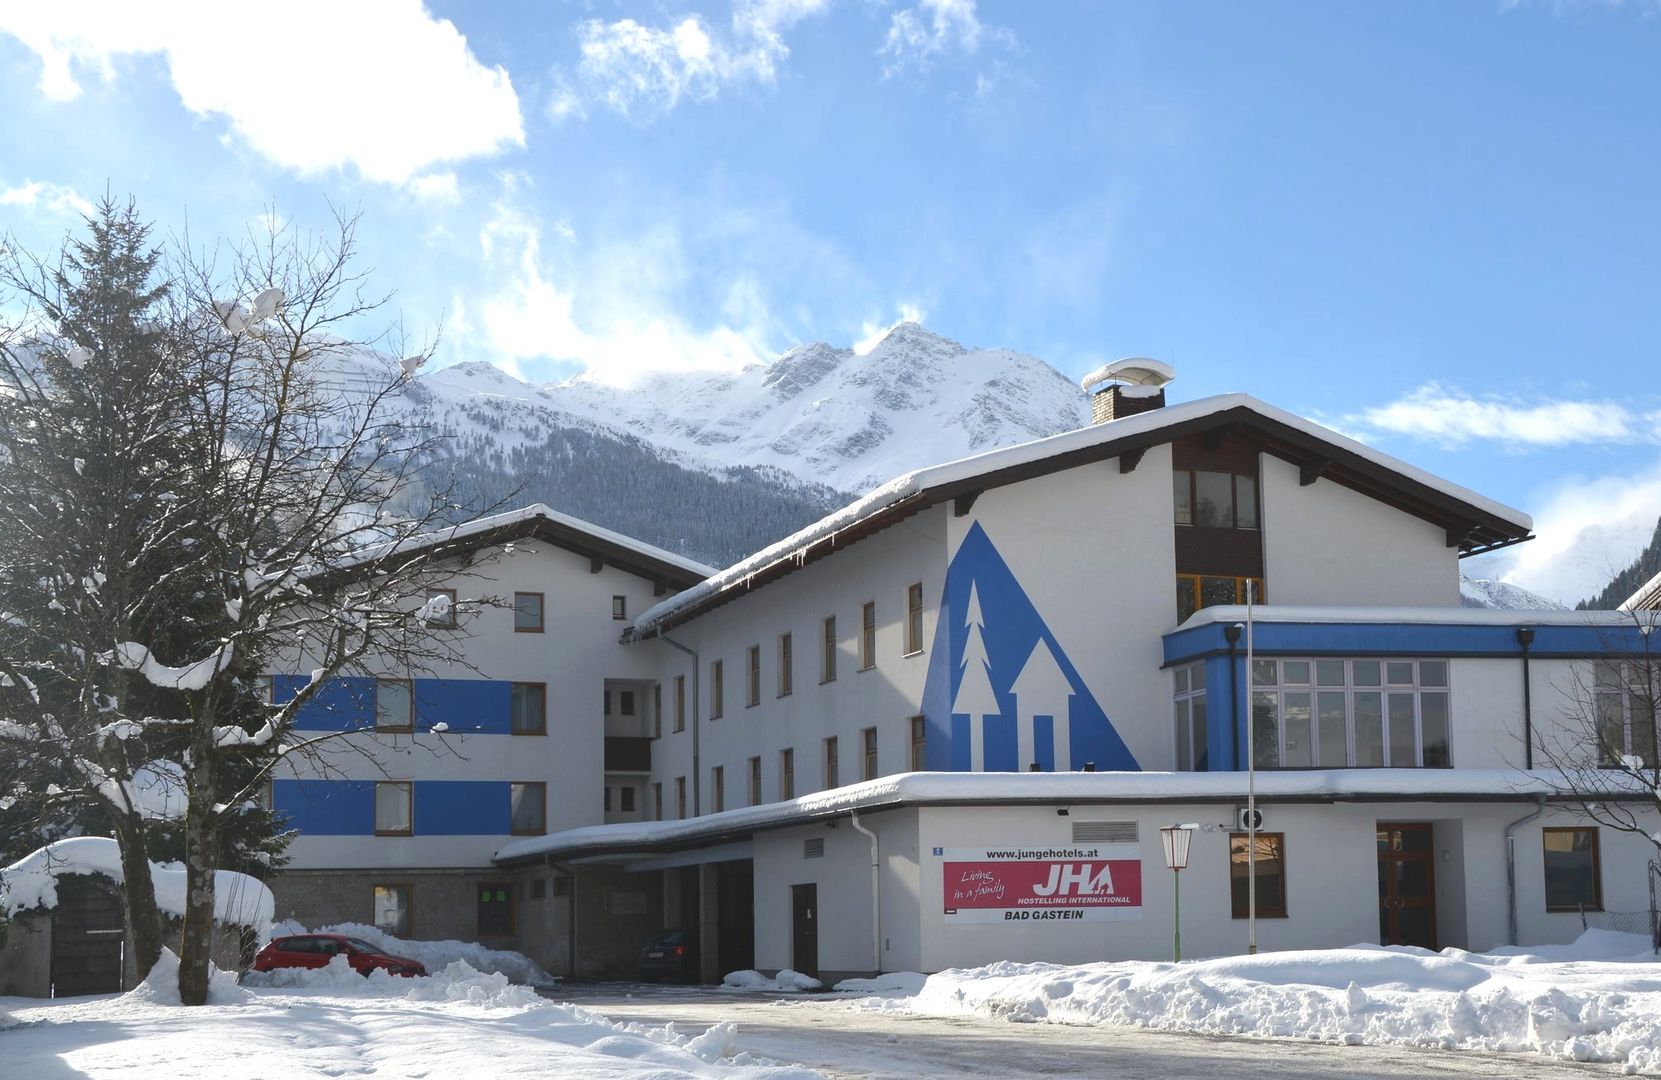 Meer info over Hostel Bad Gastein  bij Wintertrex